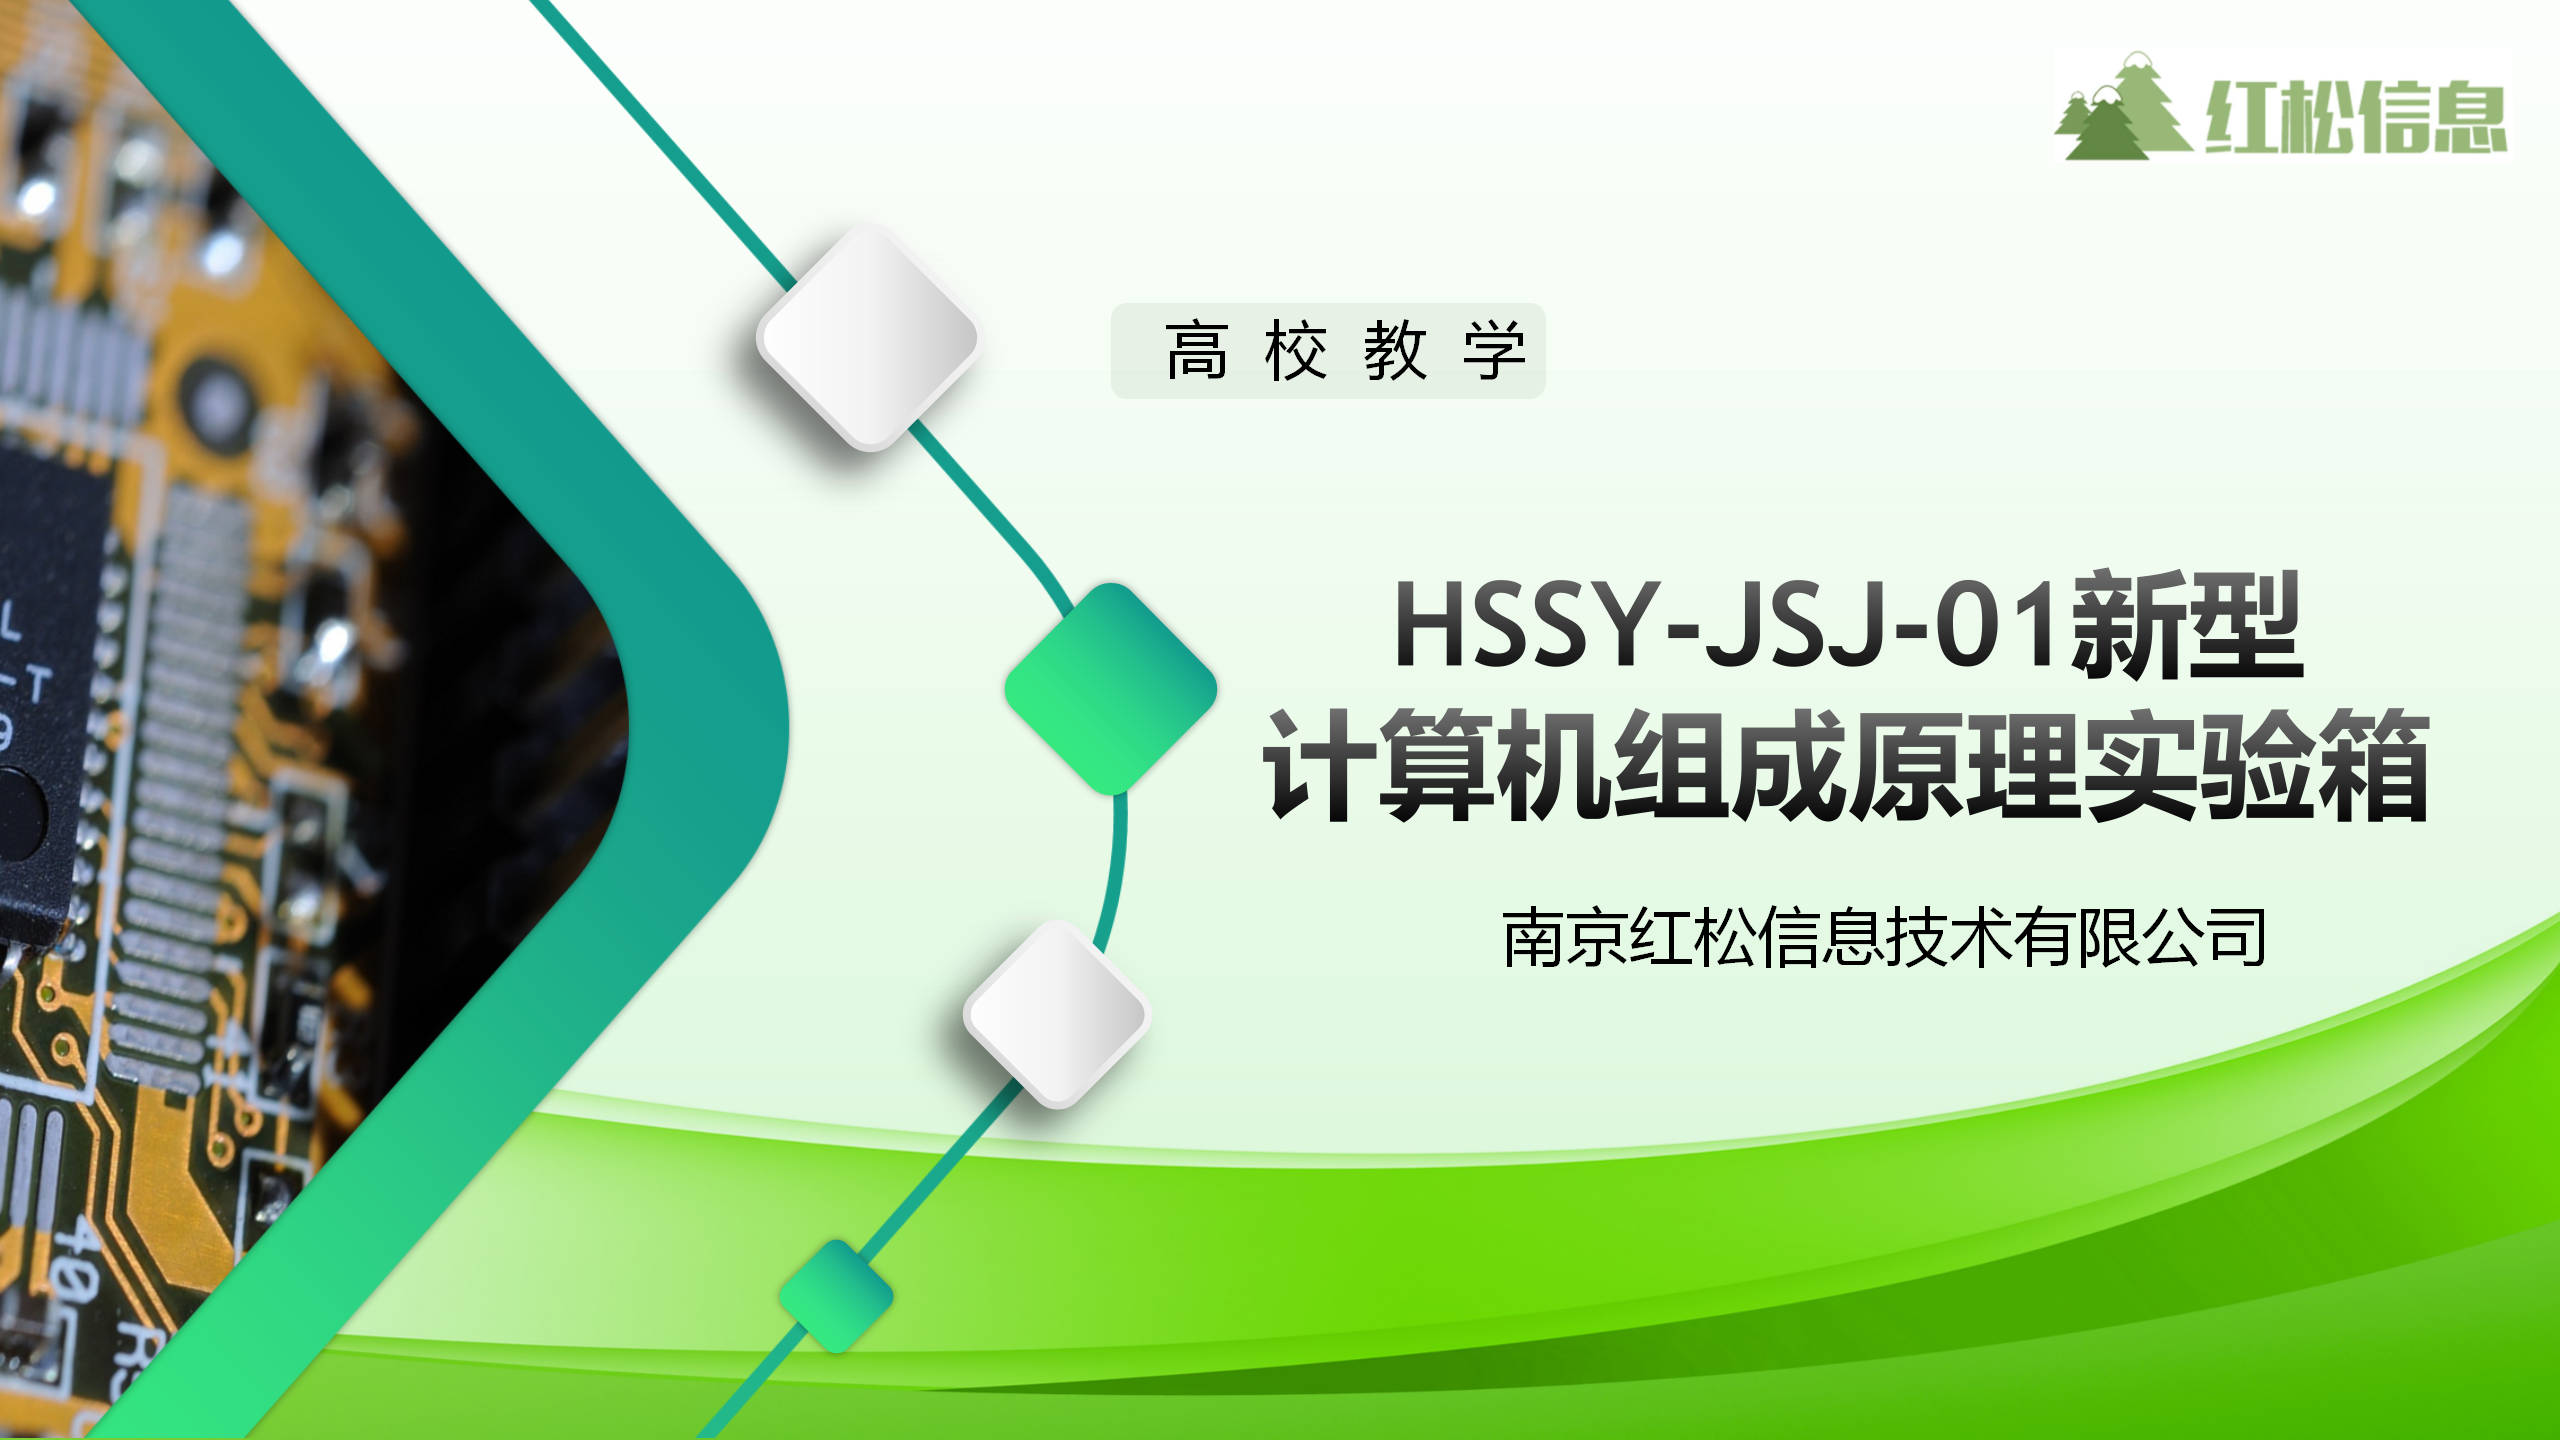 高校教学仪器|hssy-jsj-01新型计算机组成原理实验箱